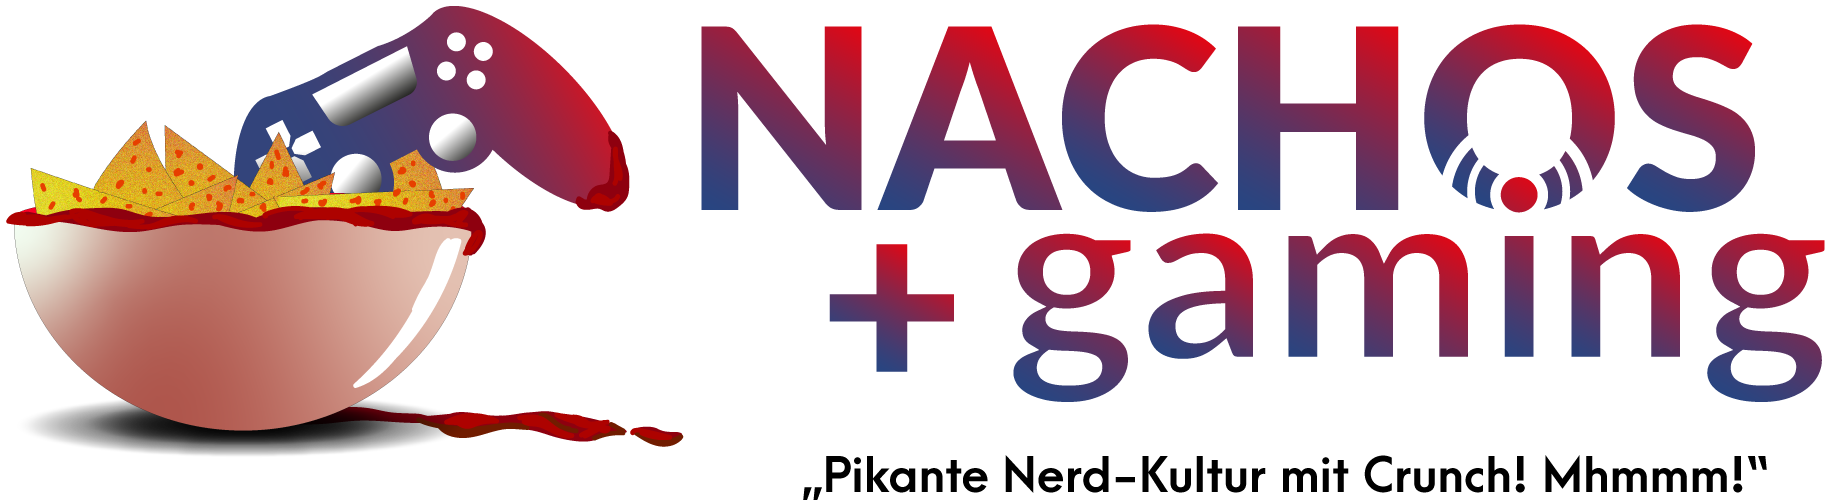 Logo for Nachos & Gaming